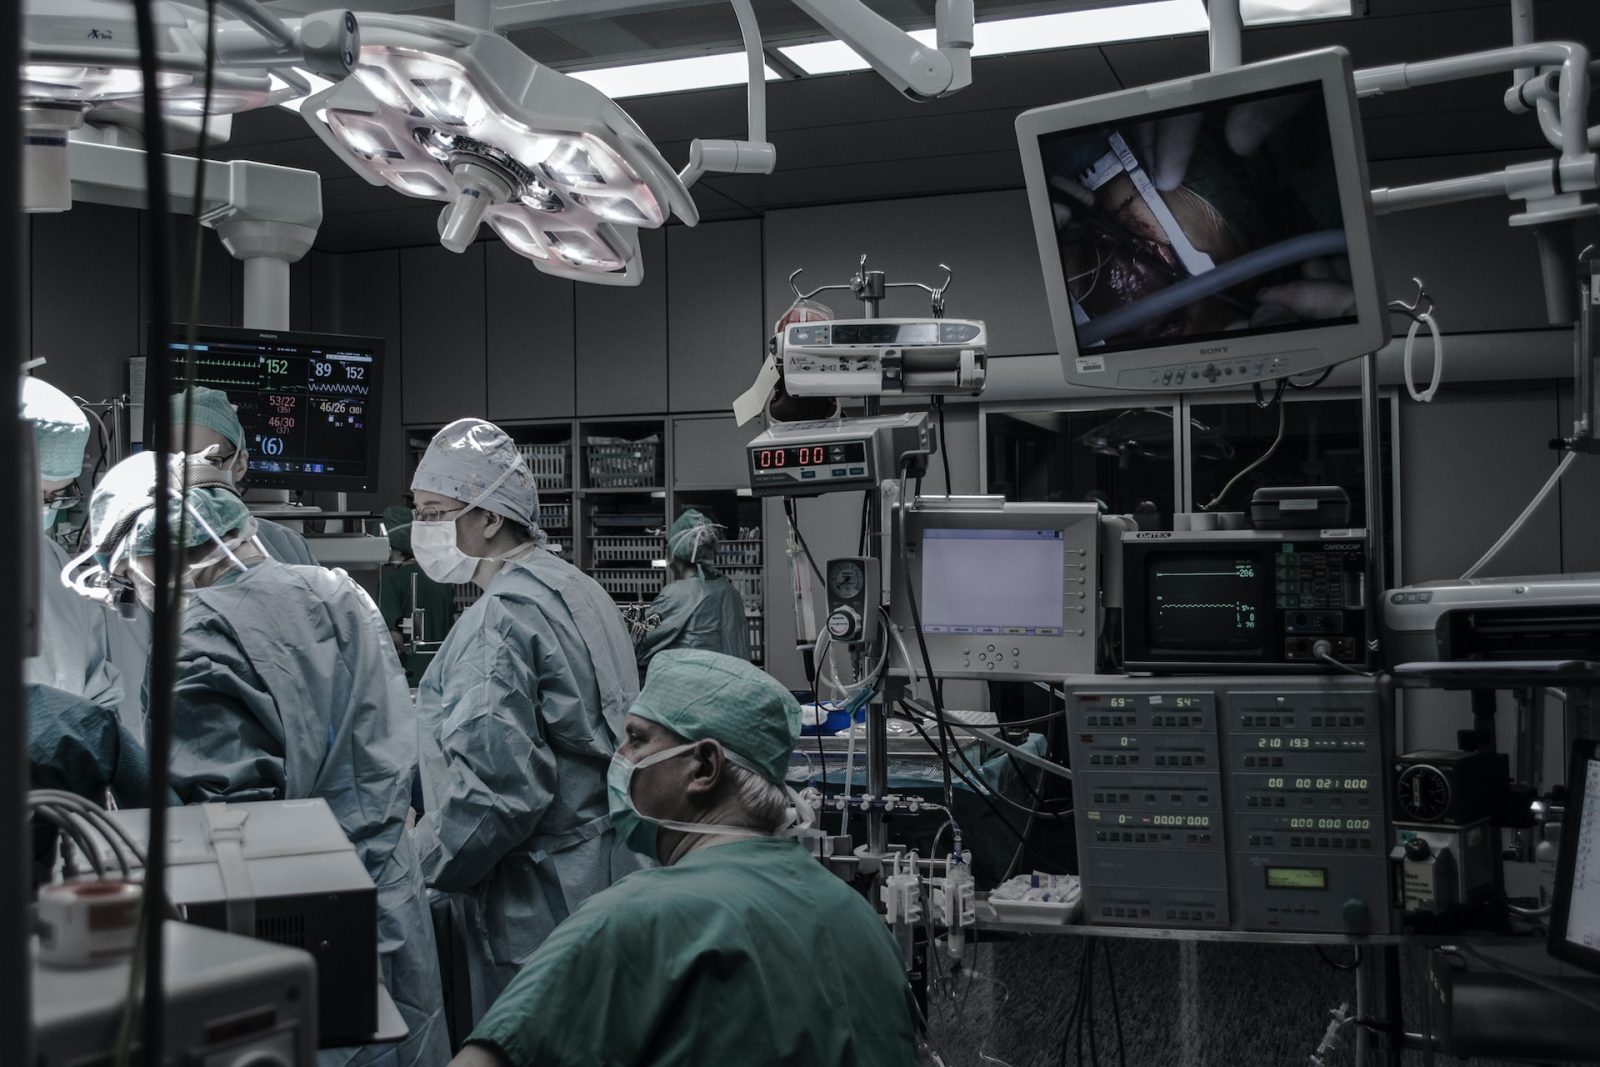 Sechs Personen in einem Operationssaal in OP-Kleidung